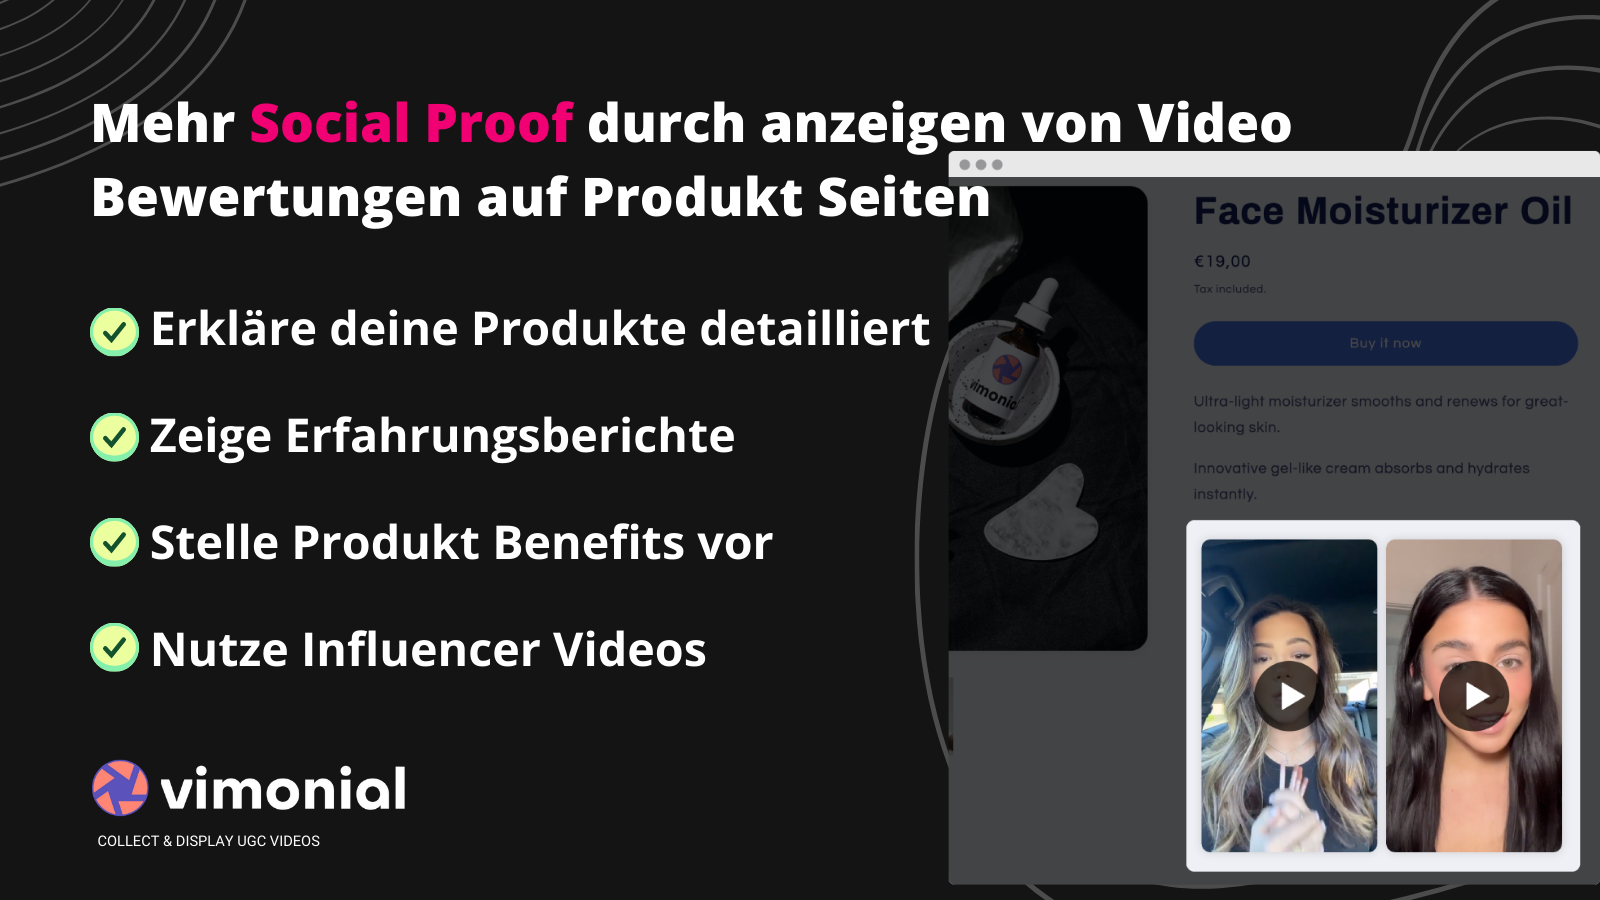 Social proof durch video testimonials auf Produktseiten